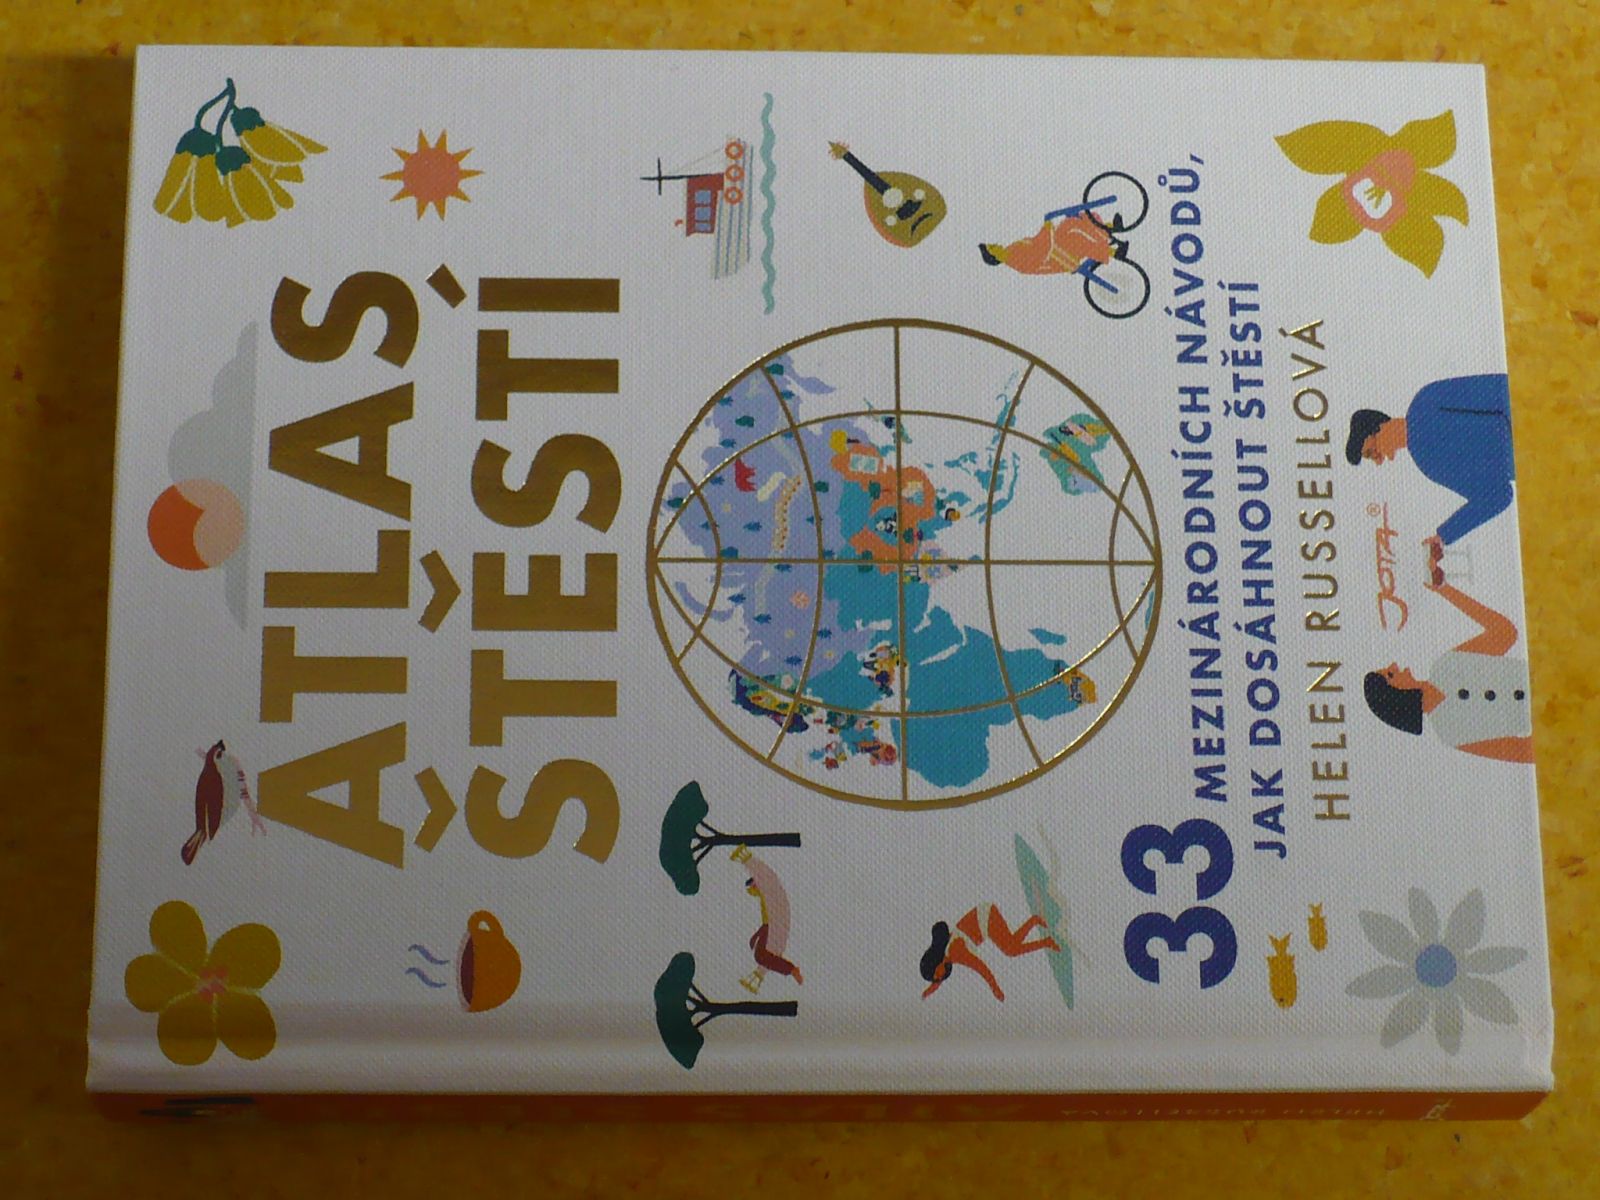 Helen Rusellová - Atlas štěstí (2019) 33 mezinárodních návodů jak dosáhnout štěstí